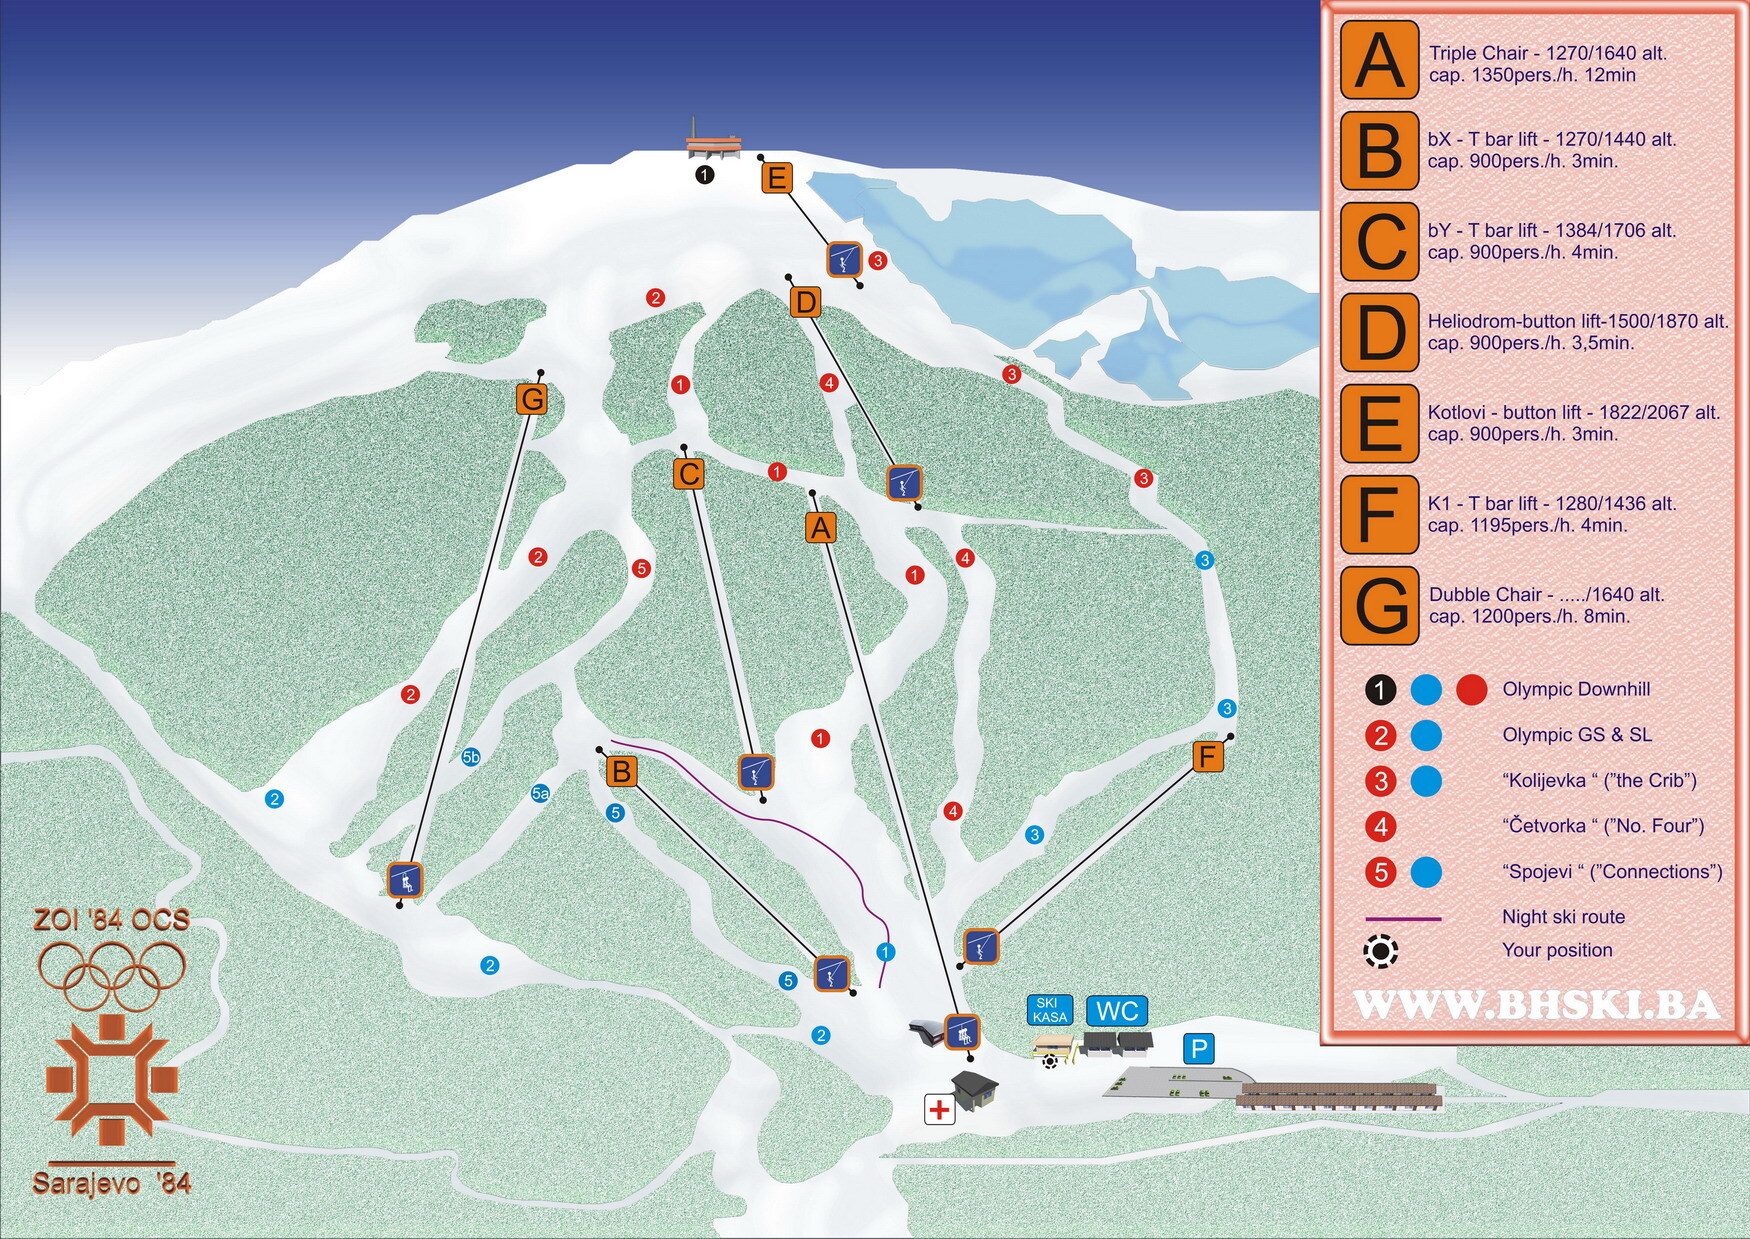 Bjelašnica Piste / Trail Map